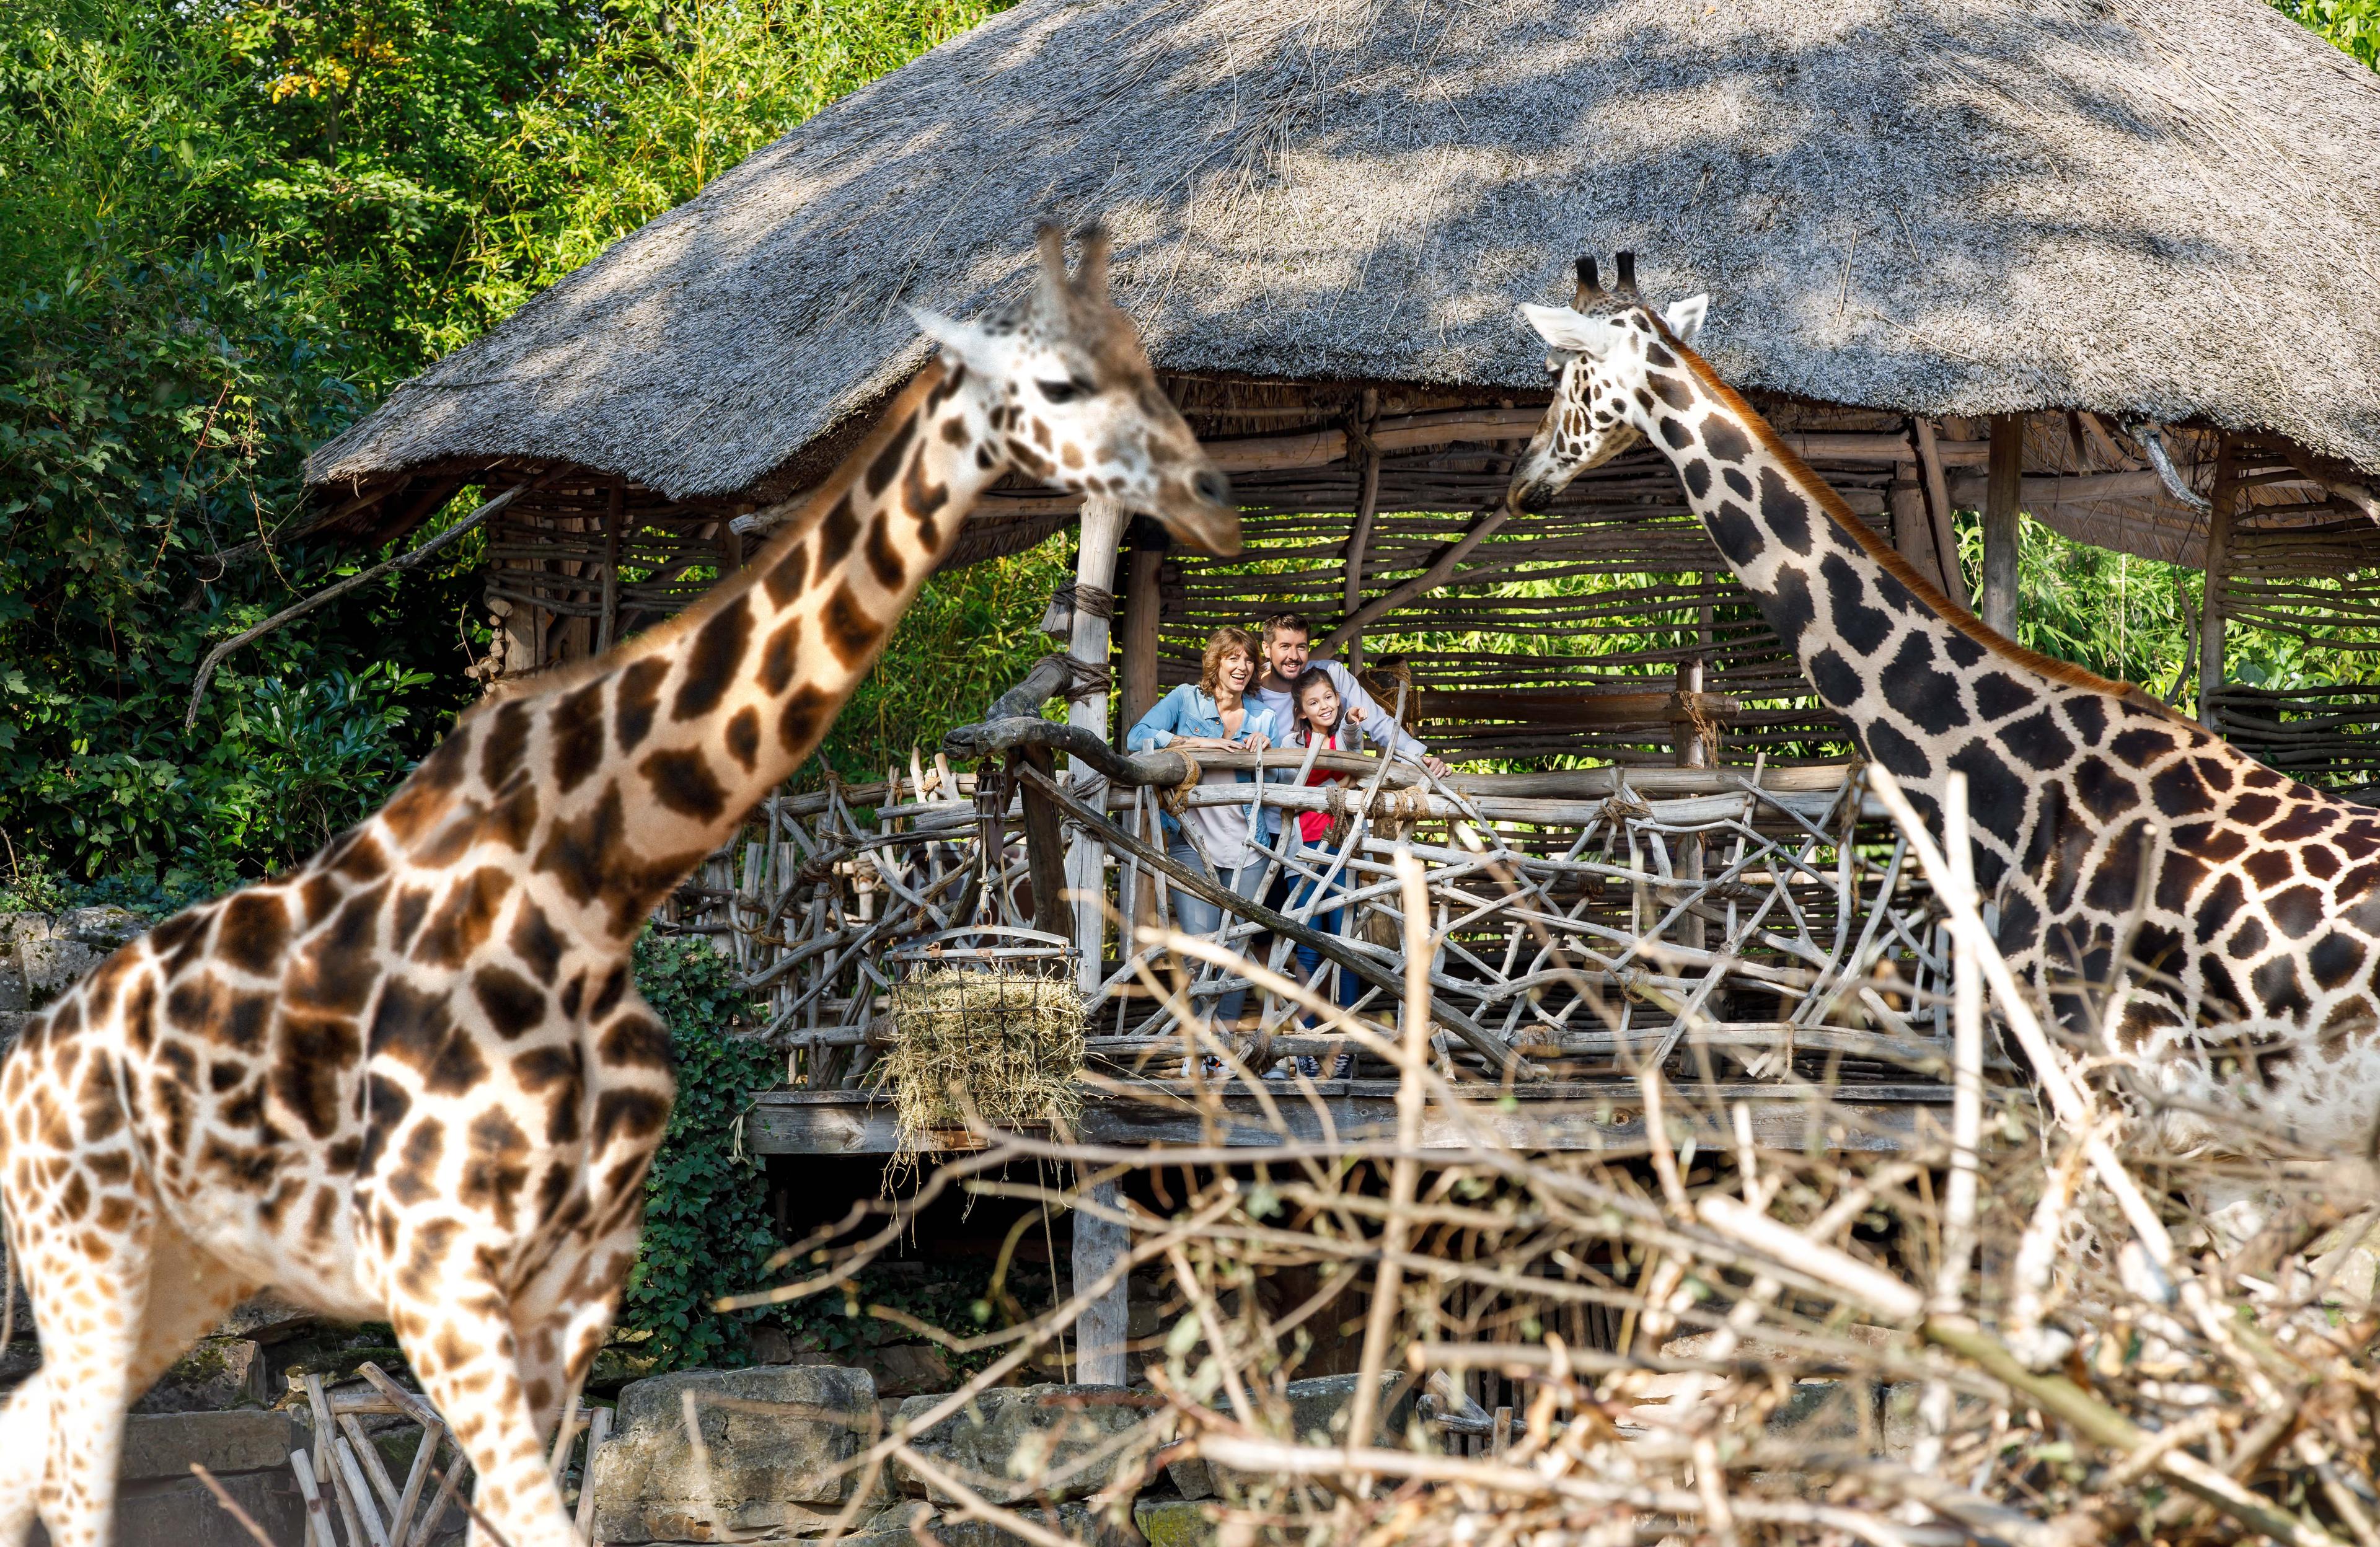 Bsucher begegnen Giraffen auf Augenhöhe in der Giraffenlodge